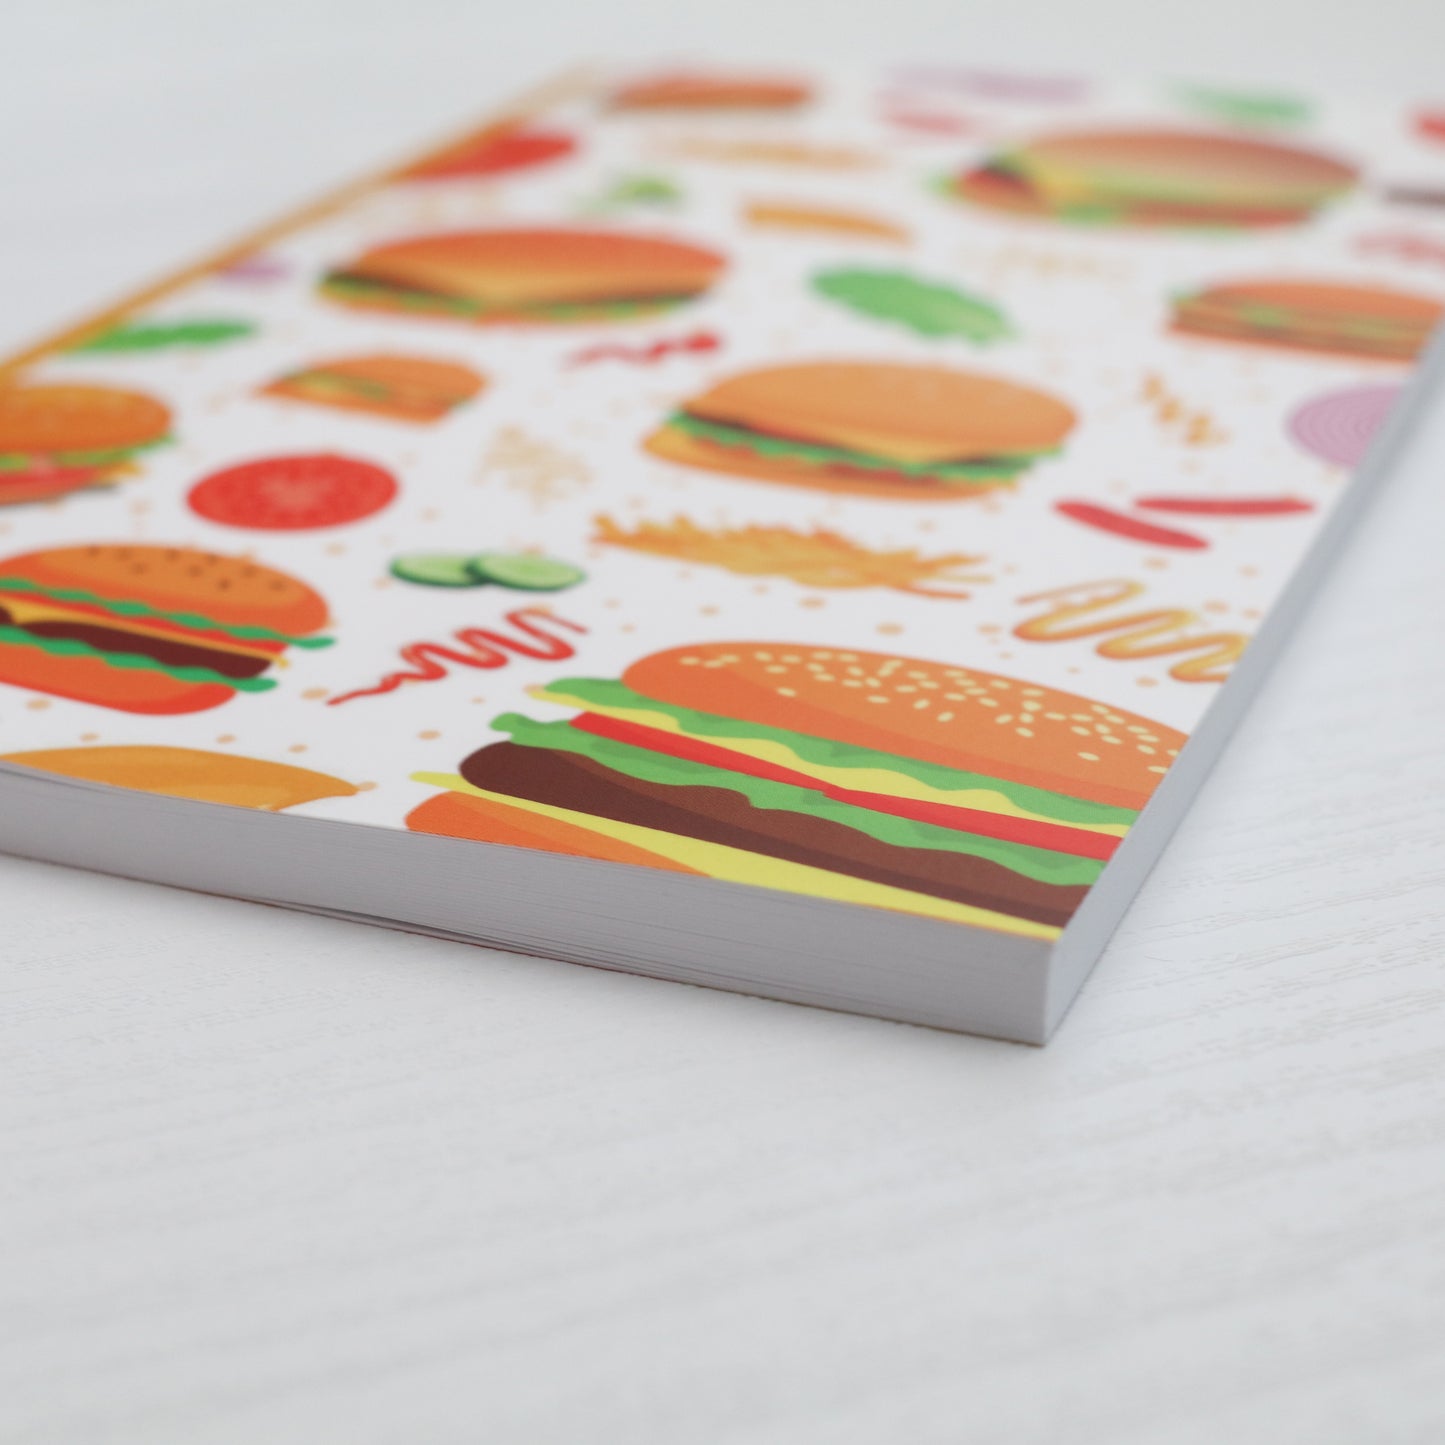 Burger Sketchbook & Notebook